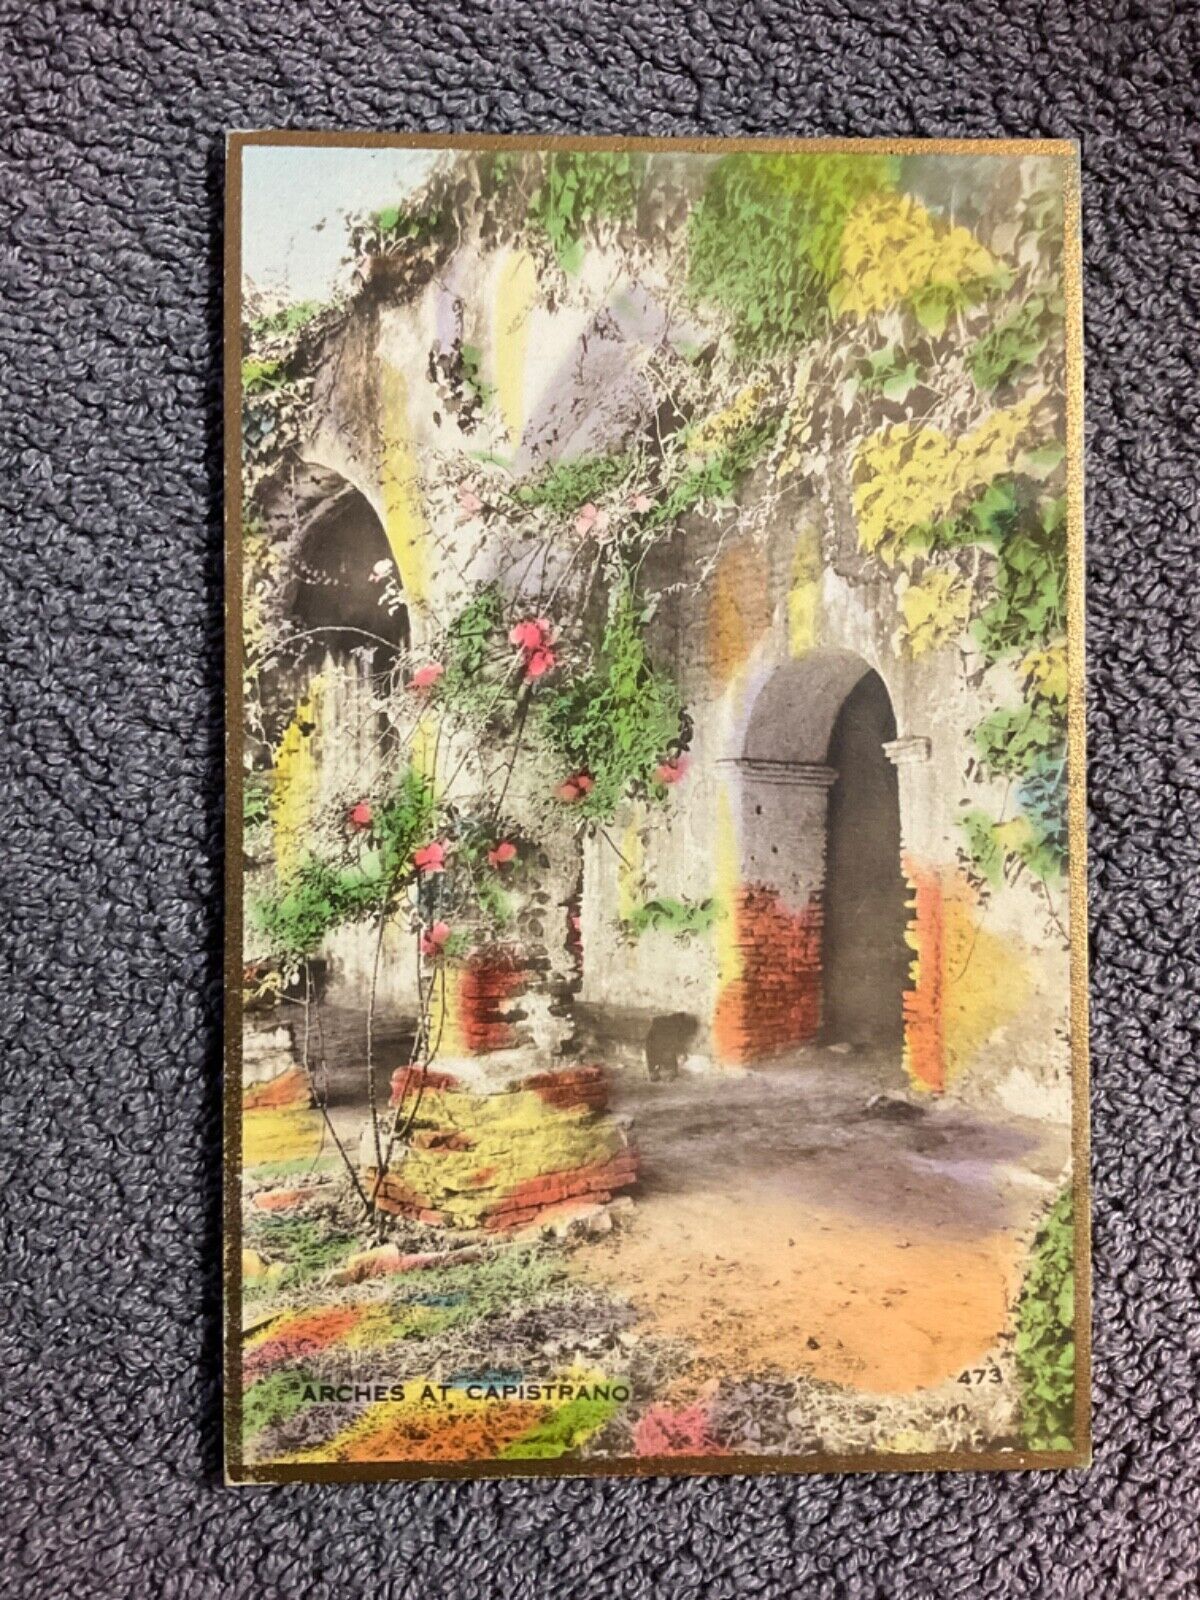 Fred Martin Hand Colored Postcard Arches at Capistrano CA 473